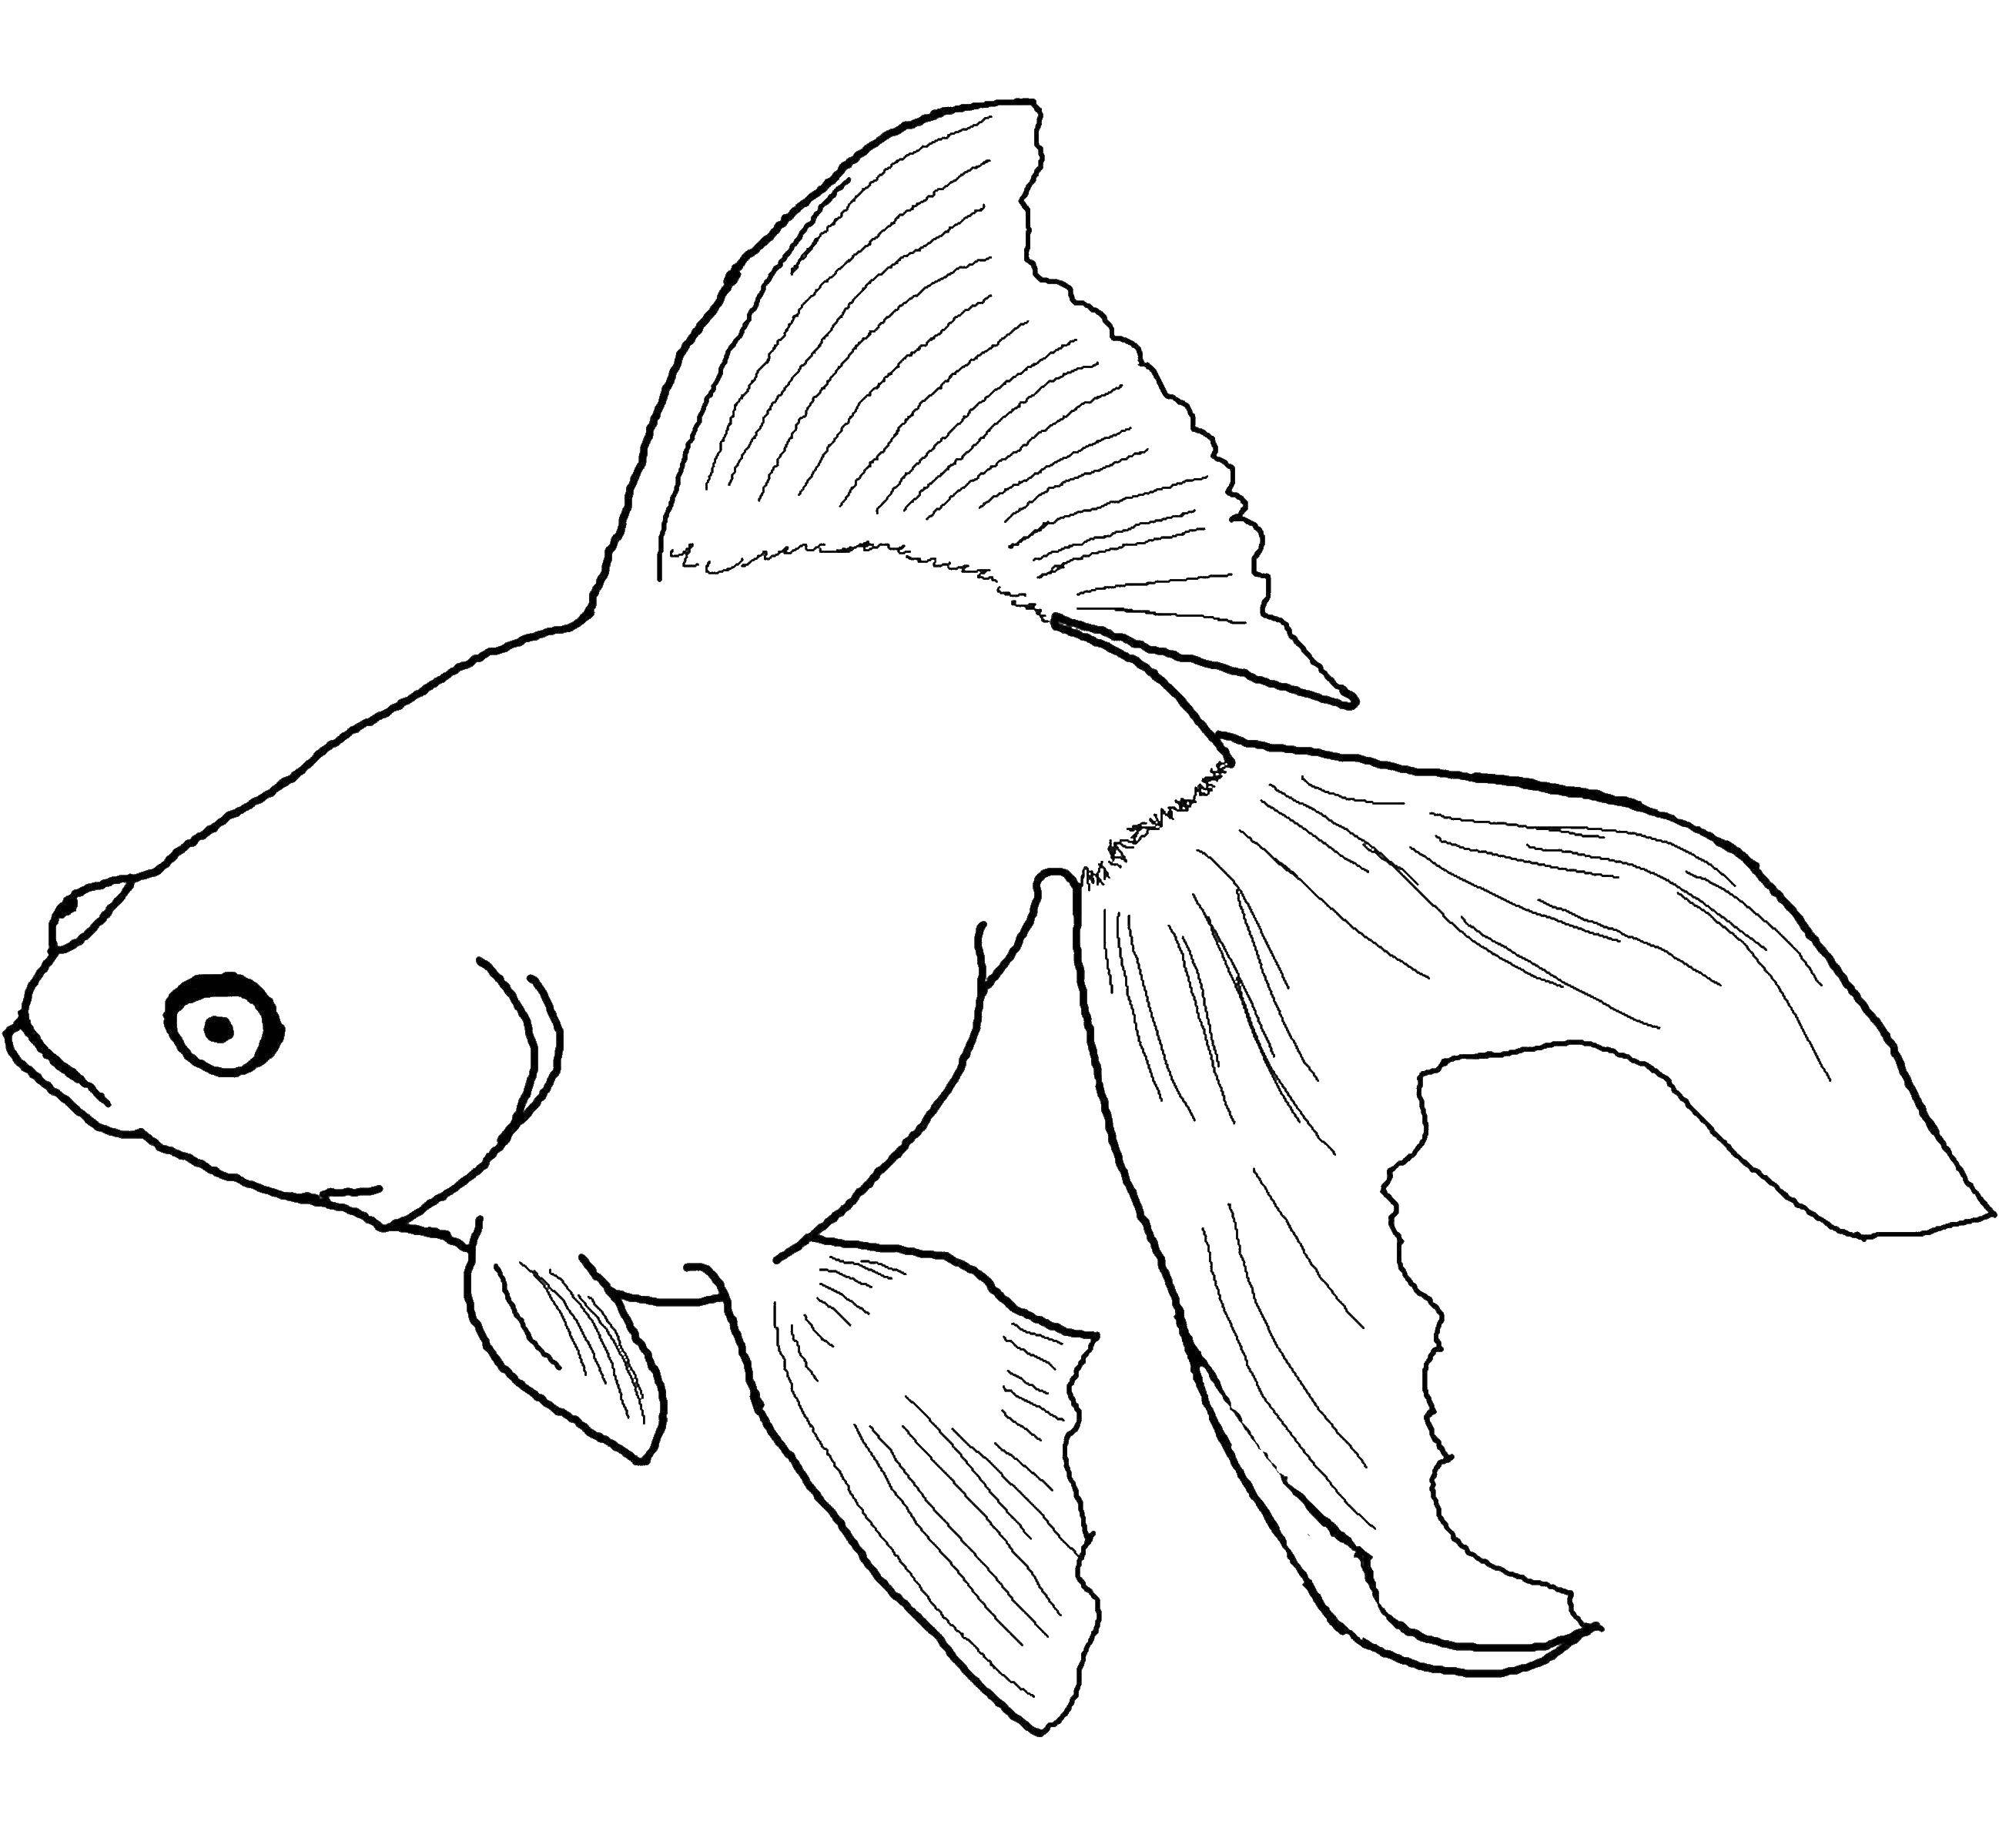 Coloring Fish. Category fish. Tags:  fish, sea.